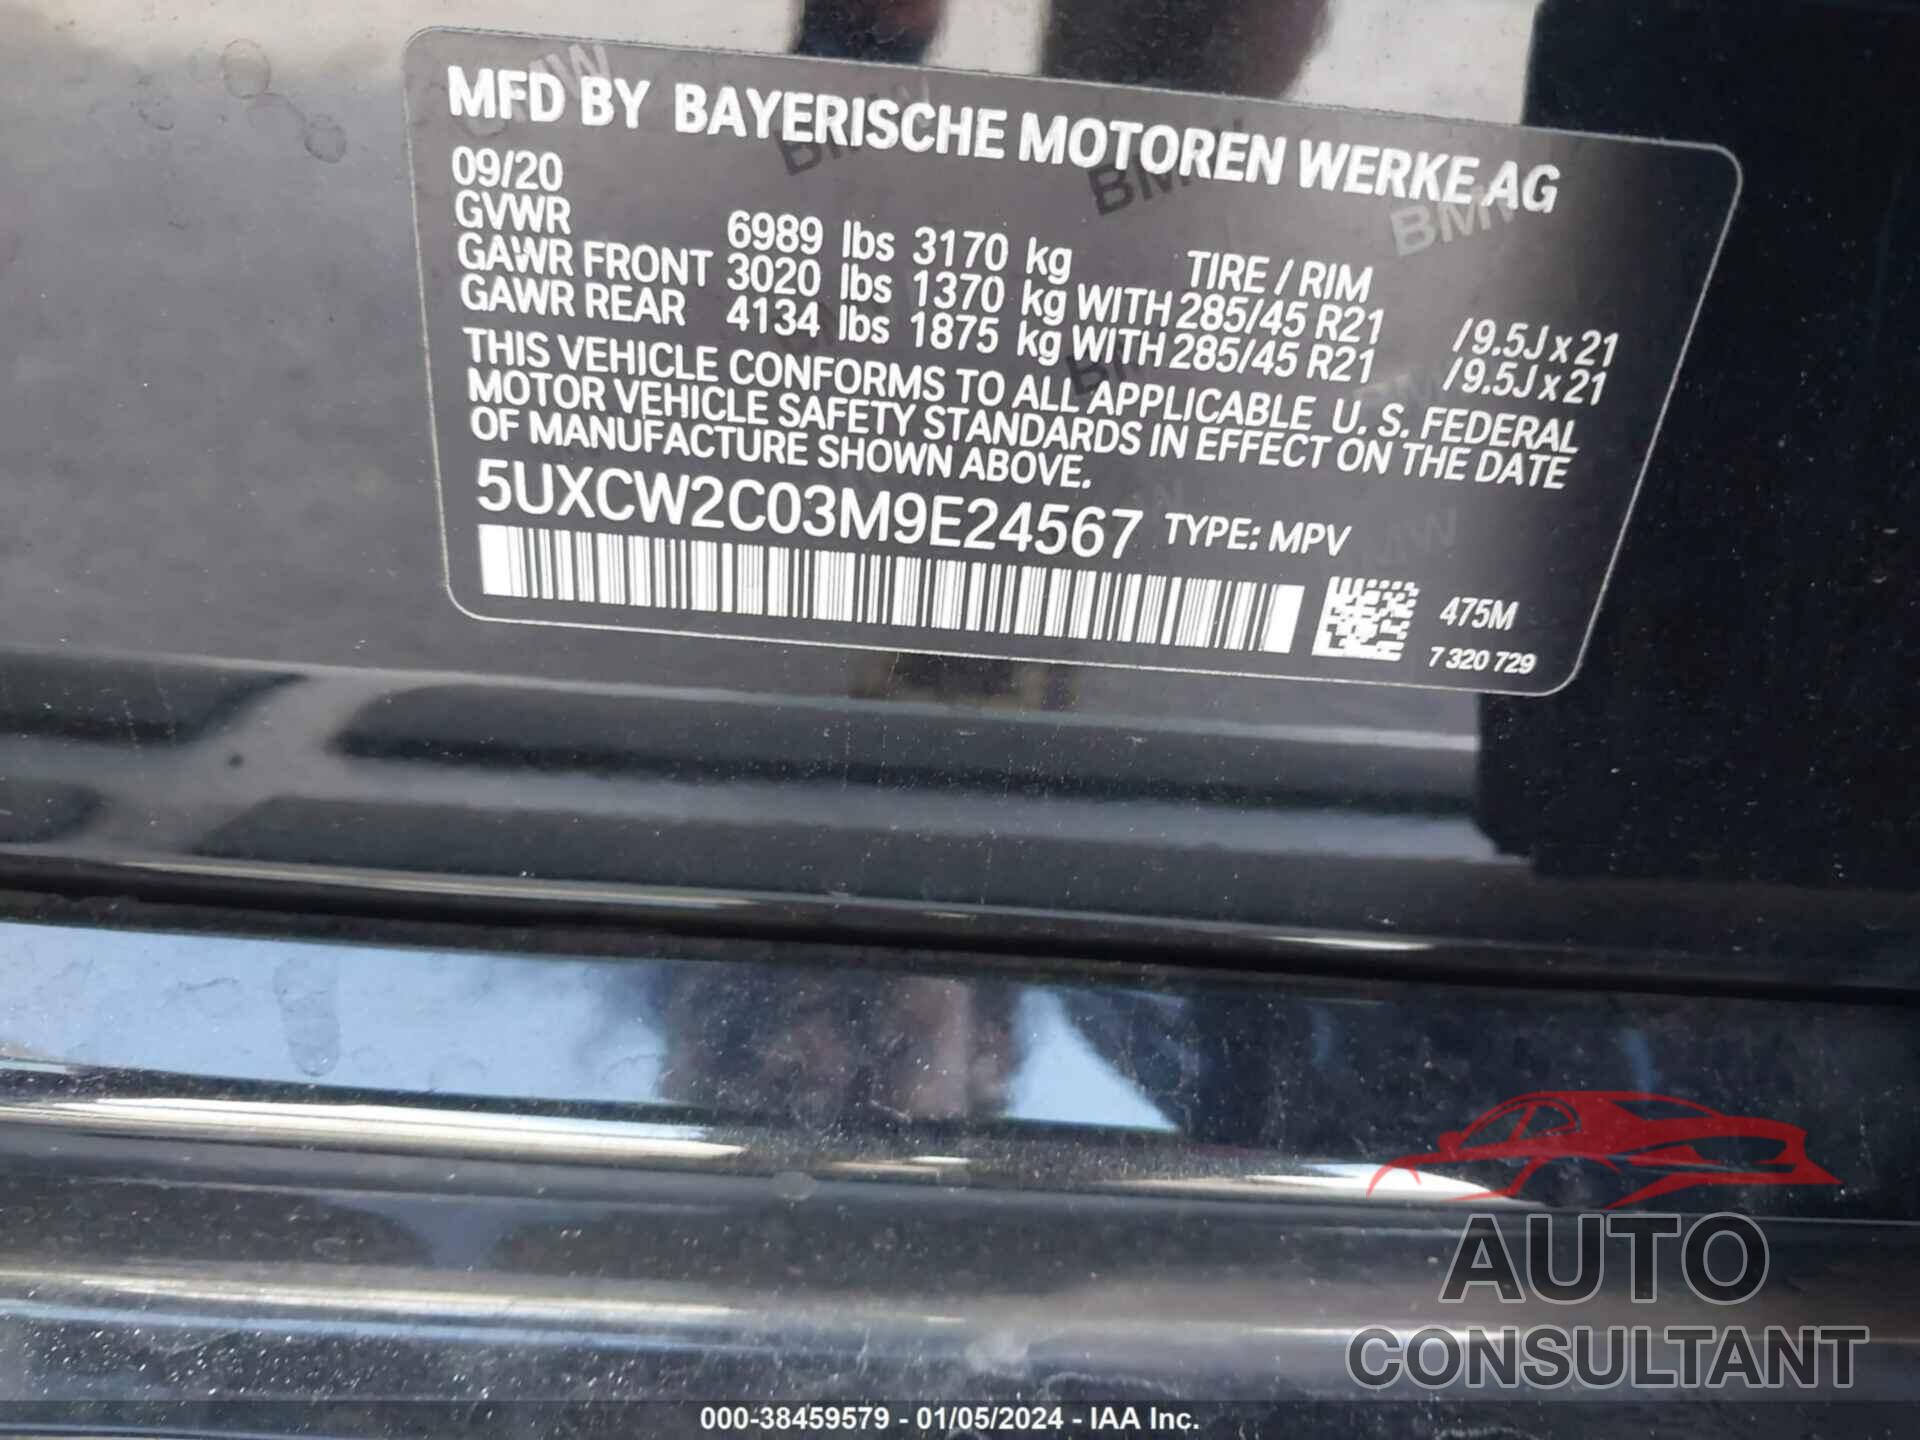 BMW X7 2021 - 5UXCW2C03M9E24567